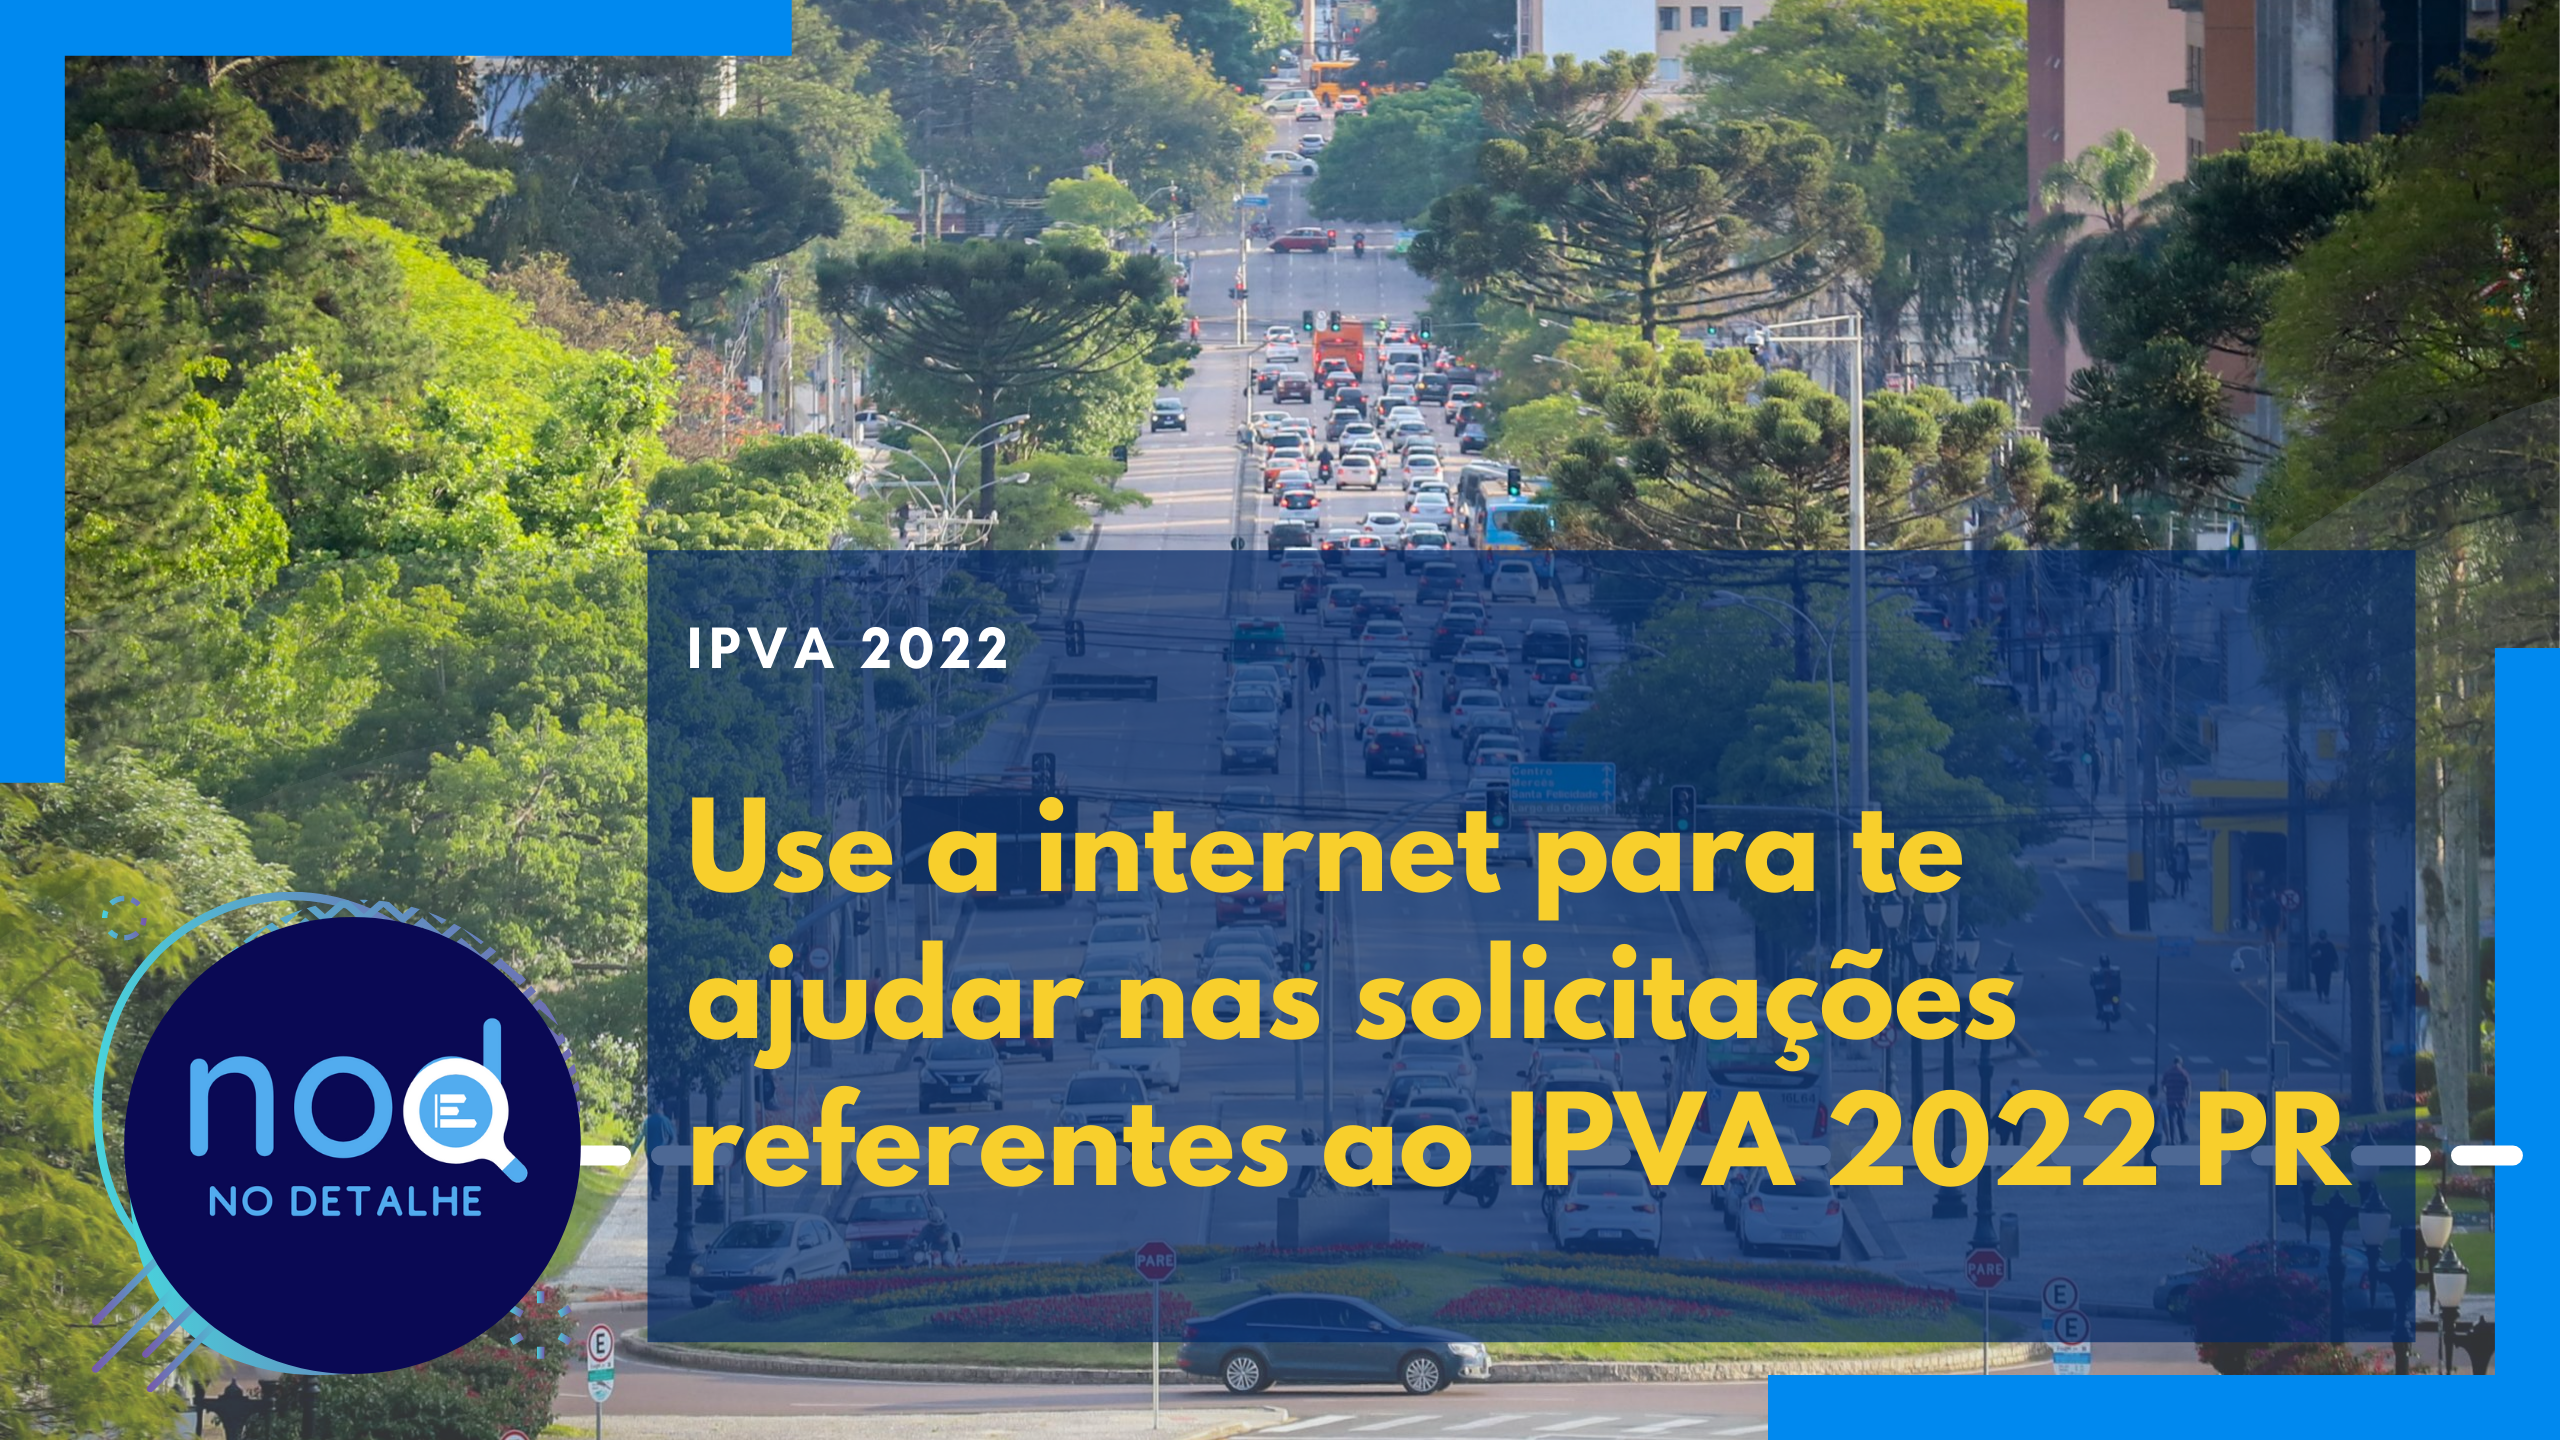 Use a internet para te ajudar nas solicitações referentes ao IPVA 2022 PR